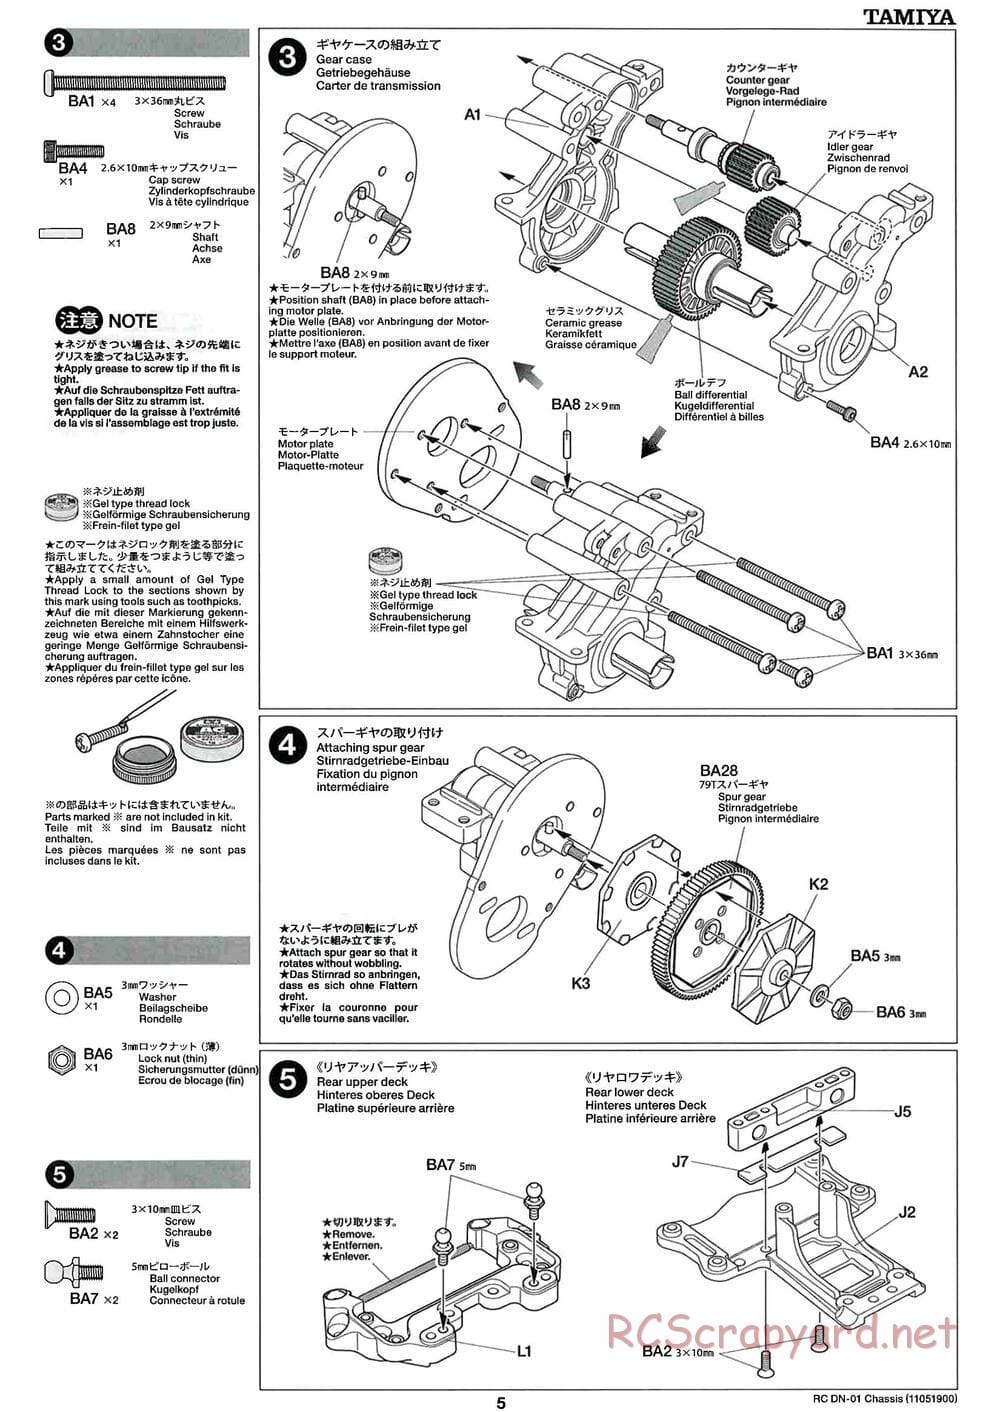 Tamiya - DN-01 Chassis - Manual - Page 5